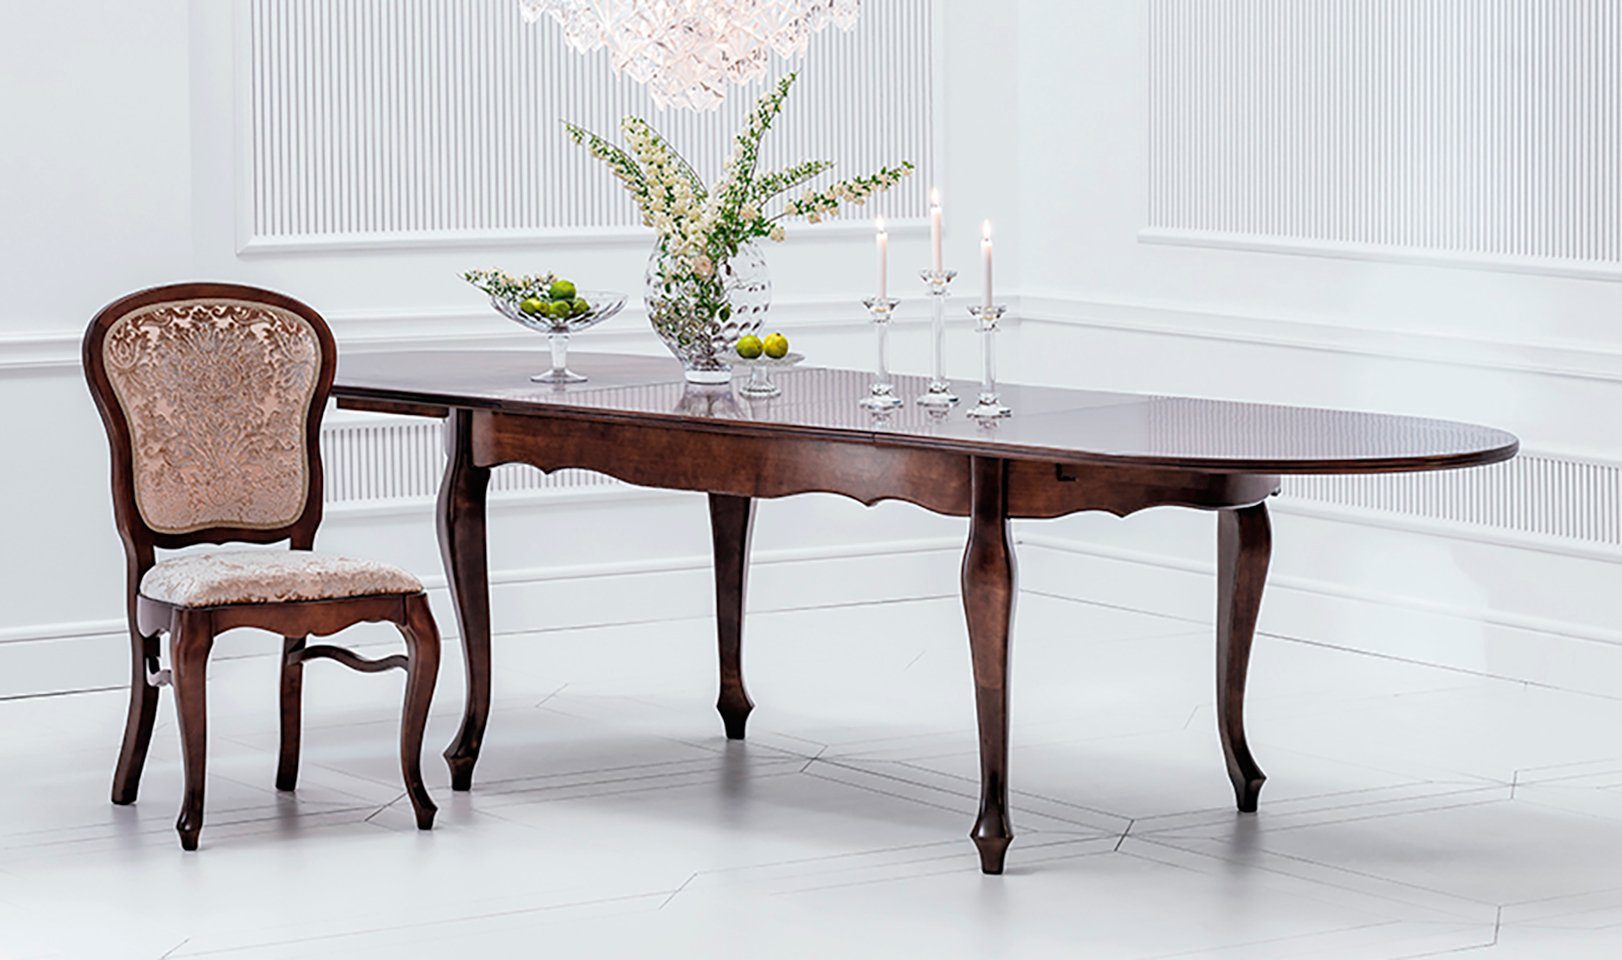 JVmoebel Esstisch, Klassischer Antik Stil Holz Tische 100x190/270cm Esstisch Wohnzimmer